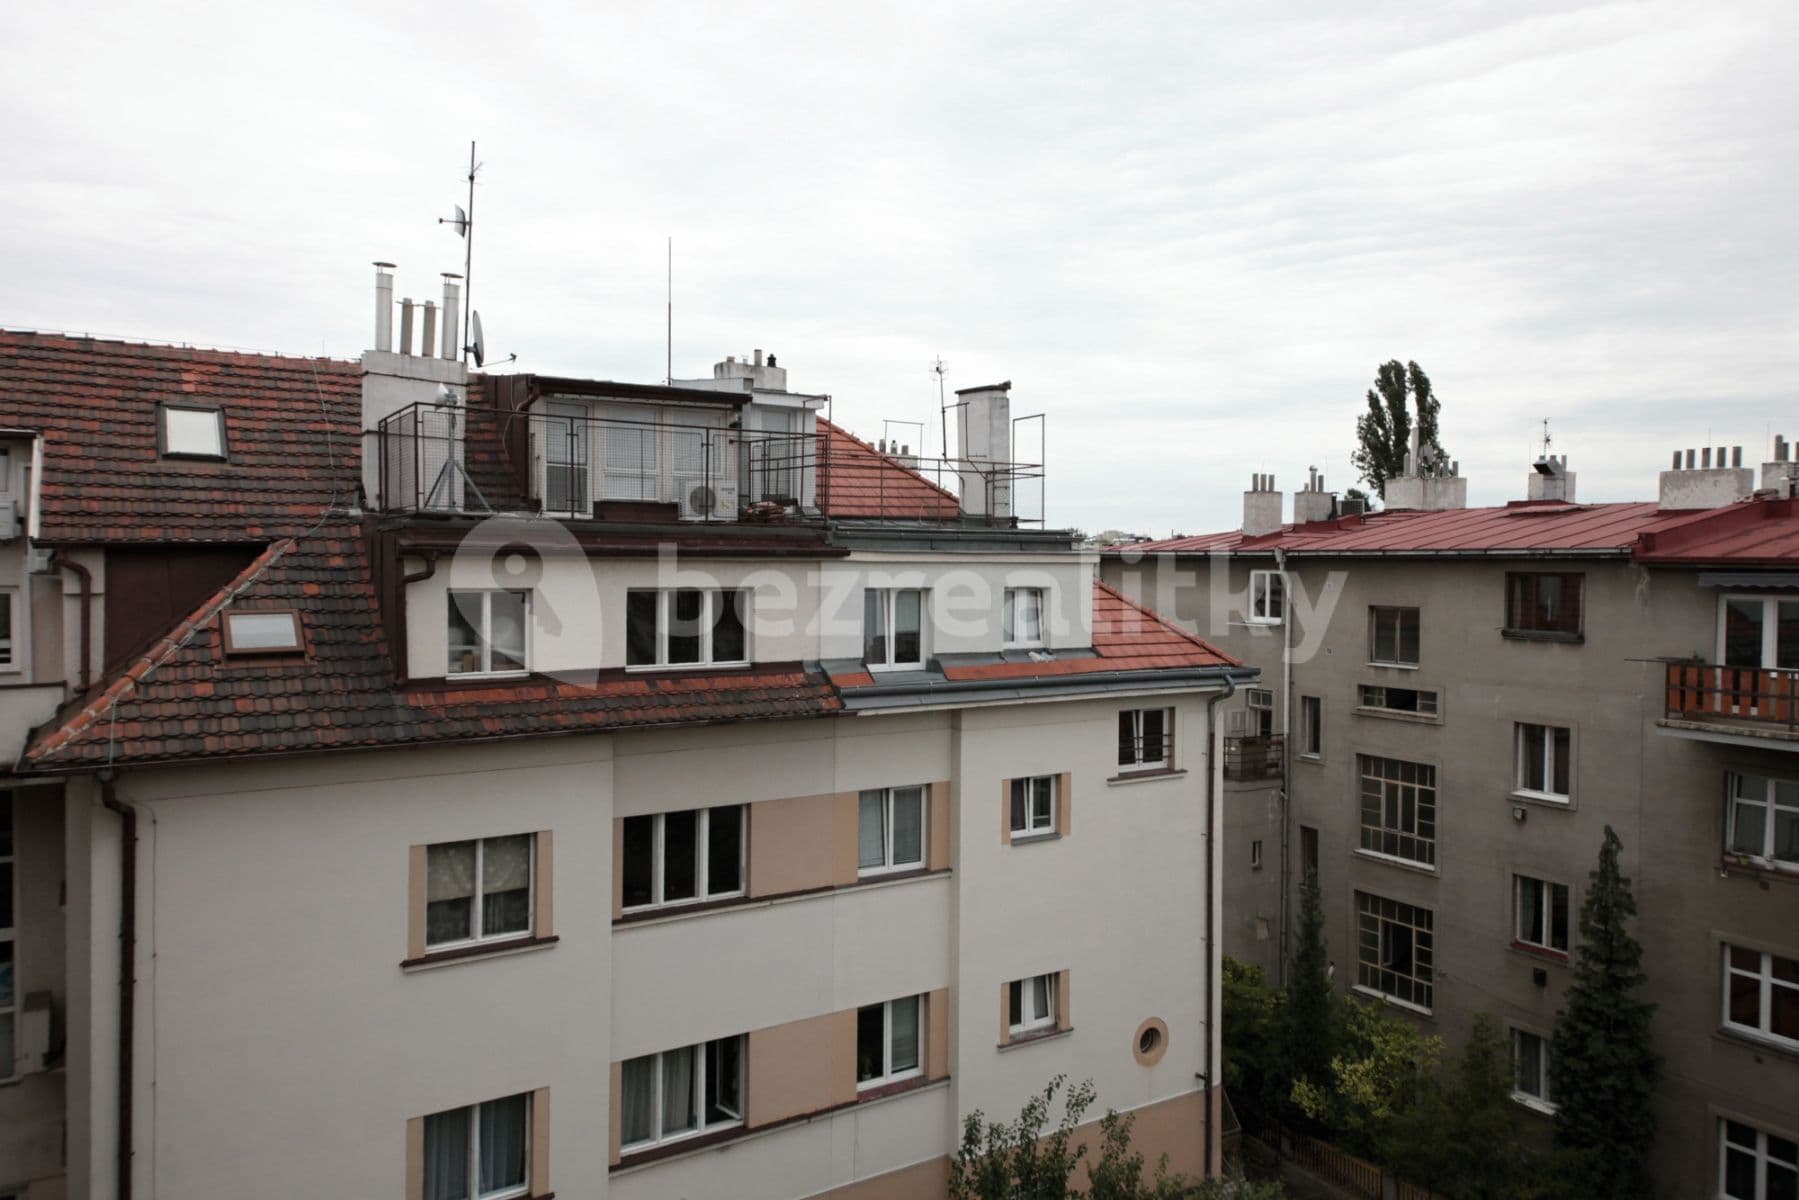 3 bedroom flat to rent, 60 m², Irkutská, Prague, Prague